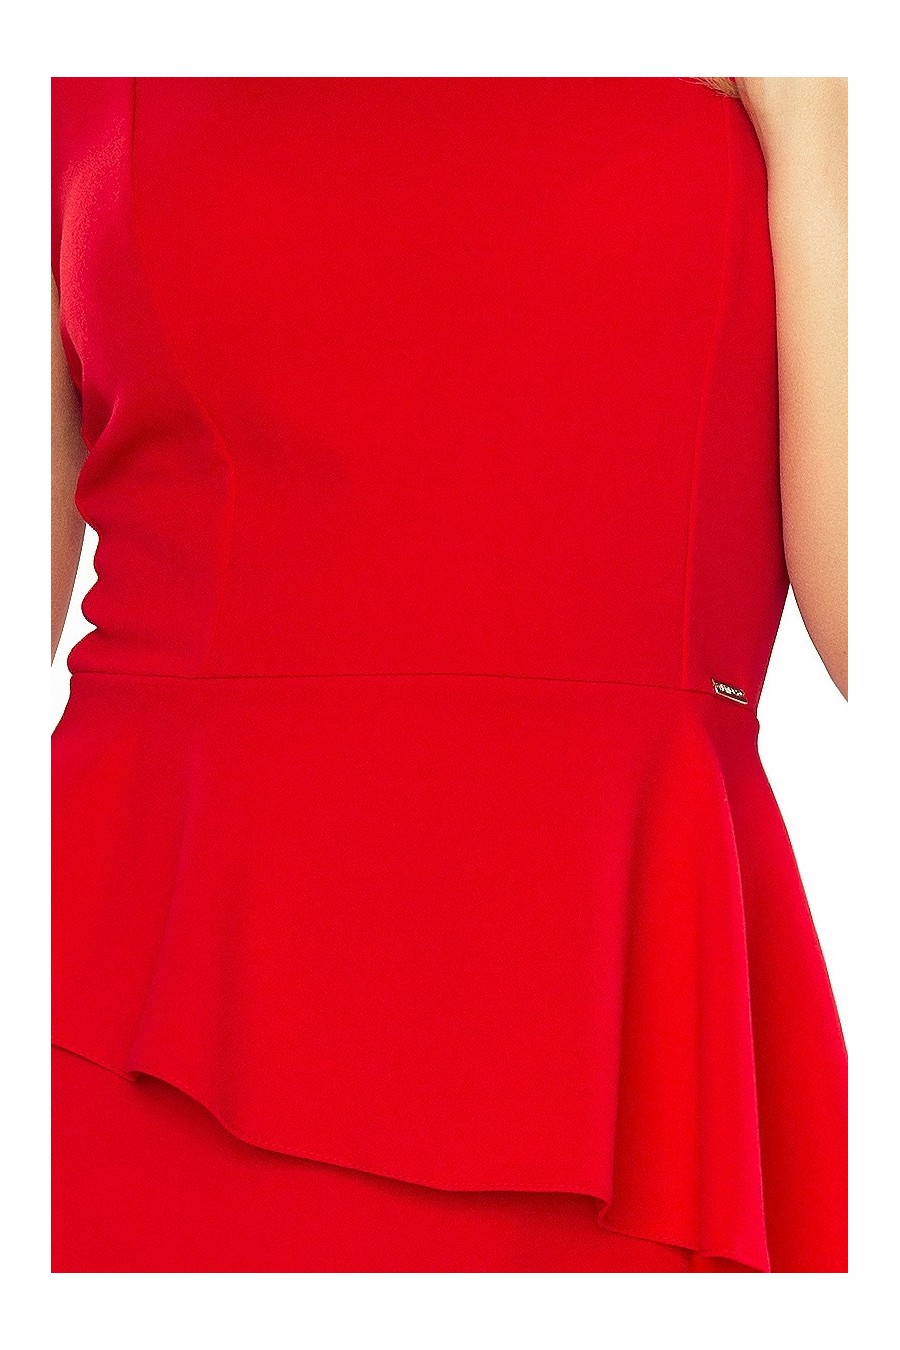 178-1 Asymetrické šaty s volánkem - červené